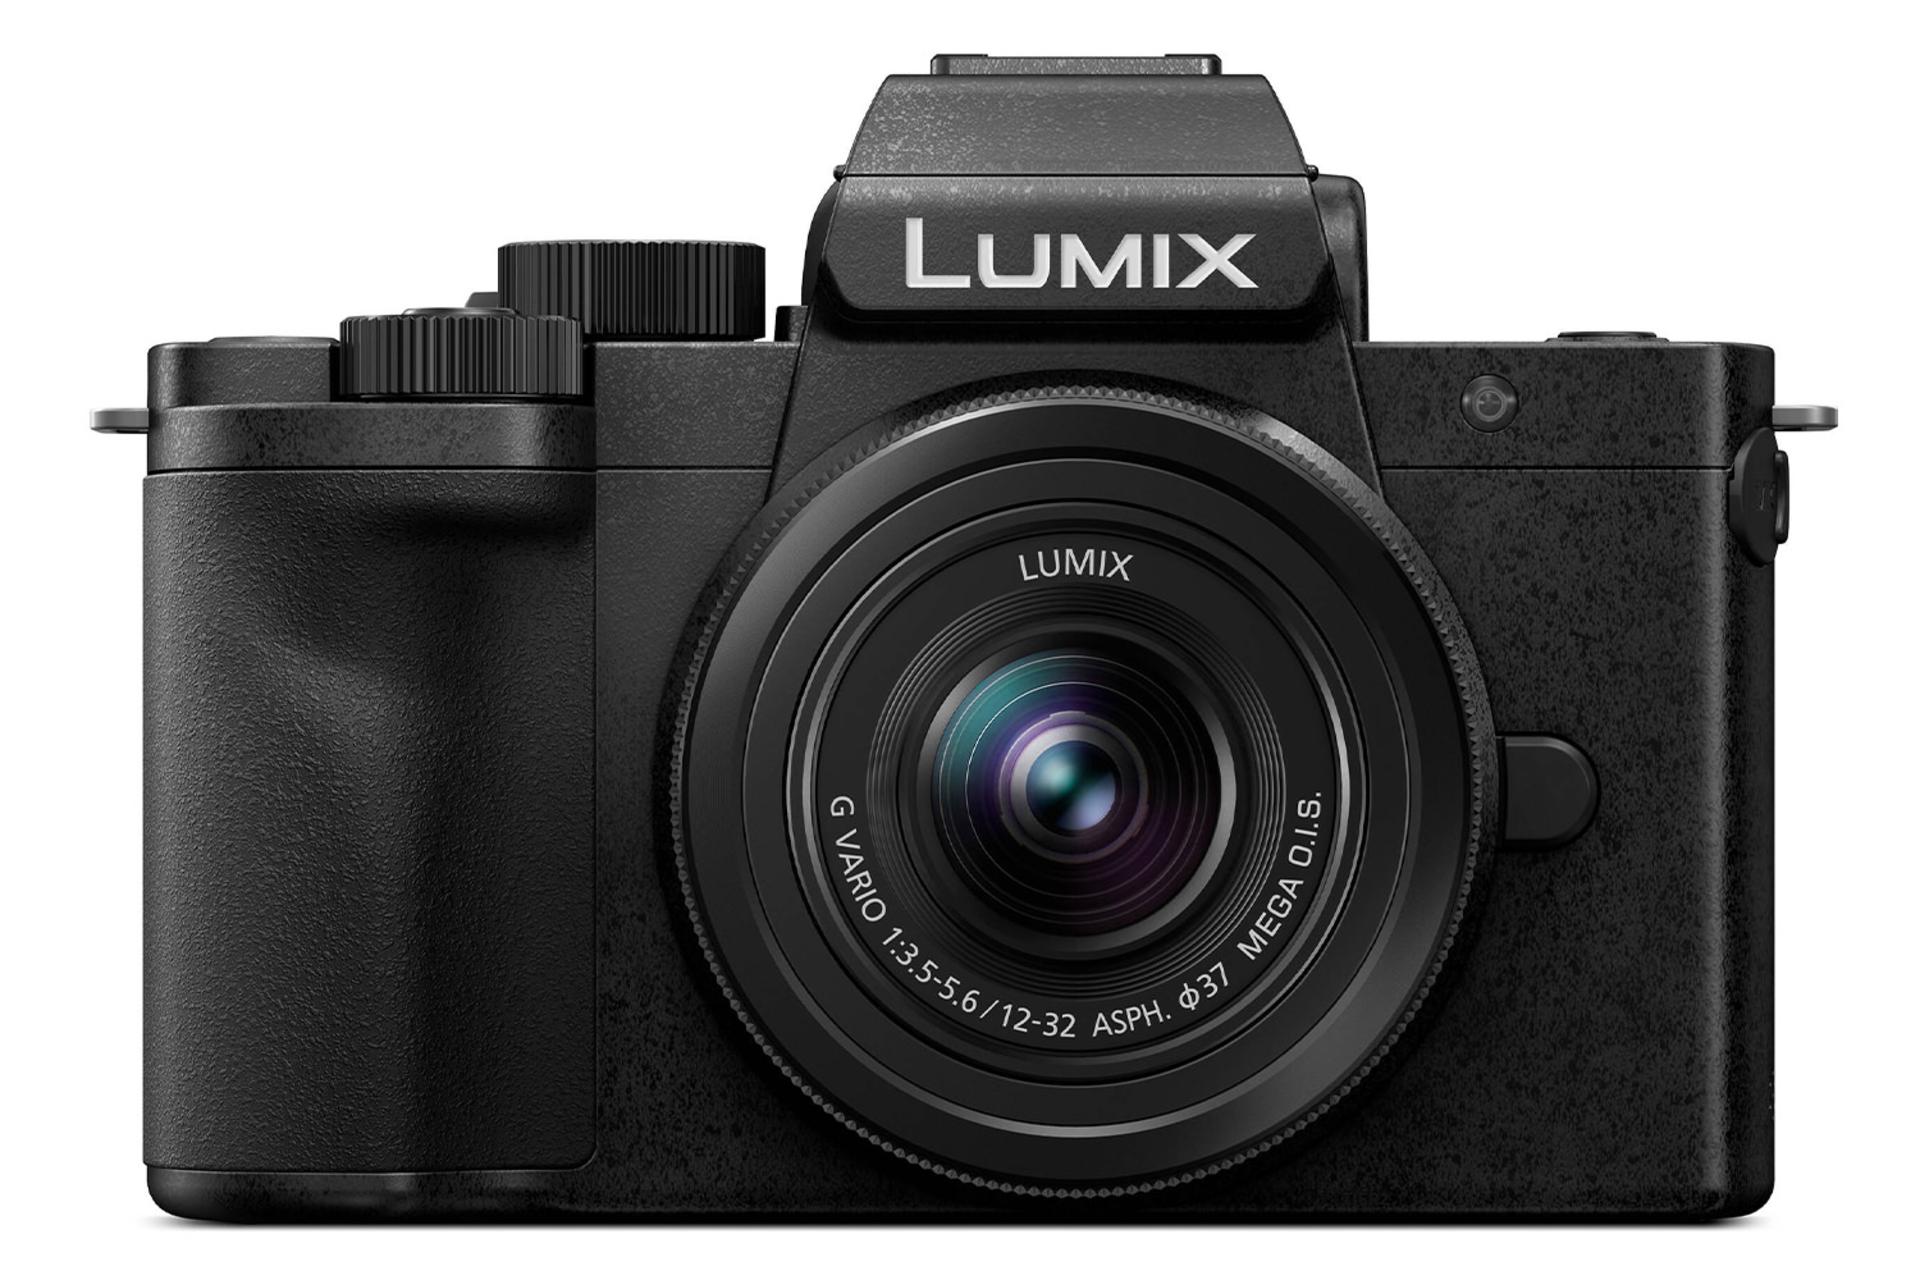 دوربین پاناسونیک لومیکس Panasonic Lumix DC-G100 نمای جلو / Panasonic Lumix DC-G100